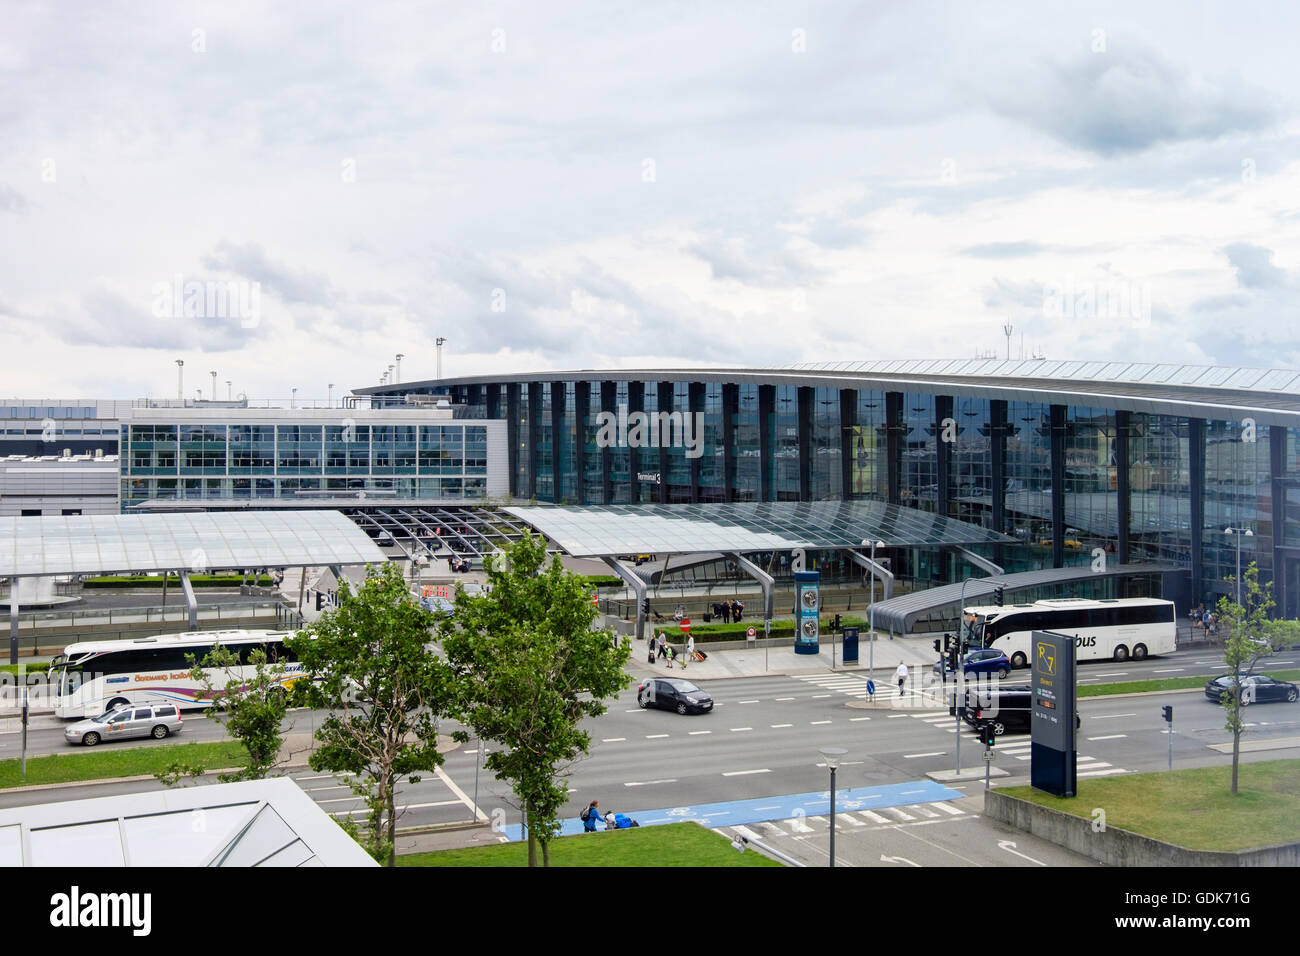 Aeroporto Internazionale di Kastrup terminale 3 esterno dell'edificio si vede da tutta la strada all'esterno. Copenaghen, Zelanda, Danimarca Foto Stock